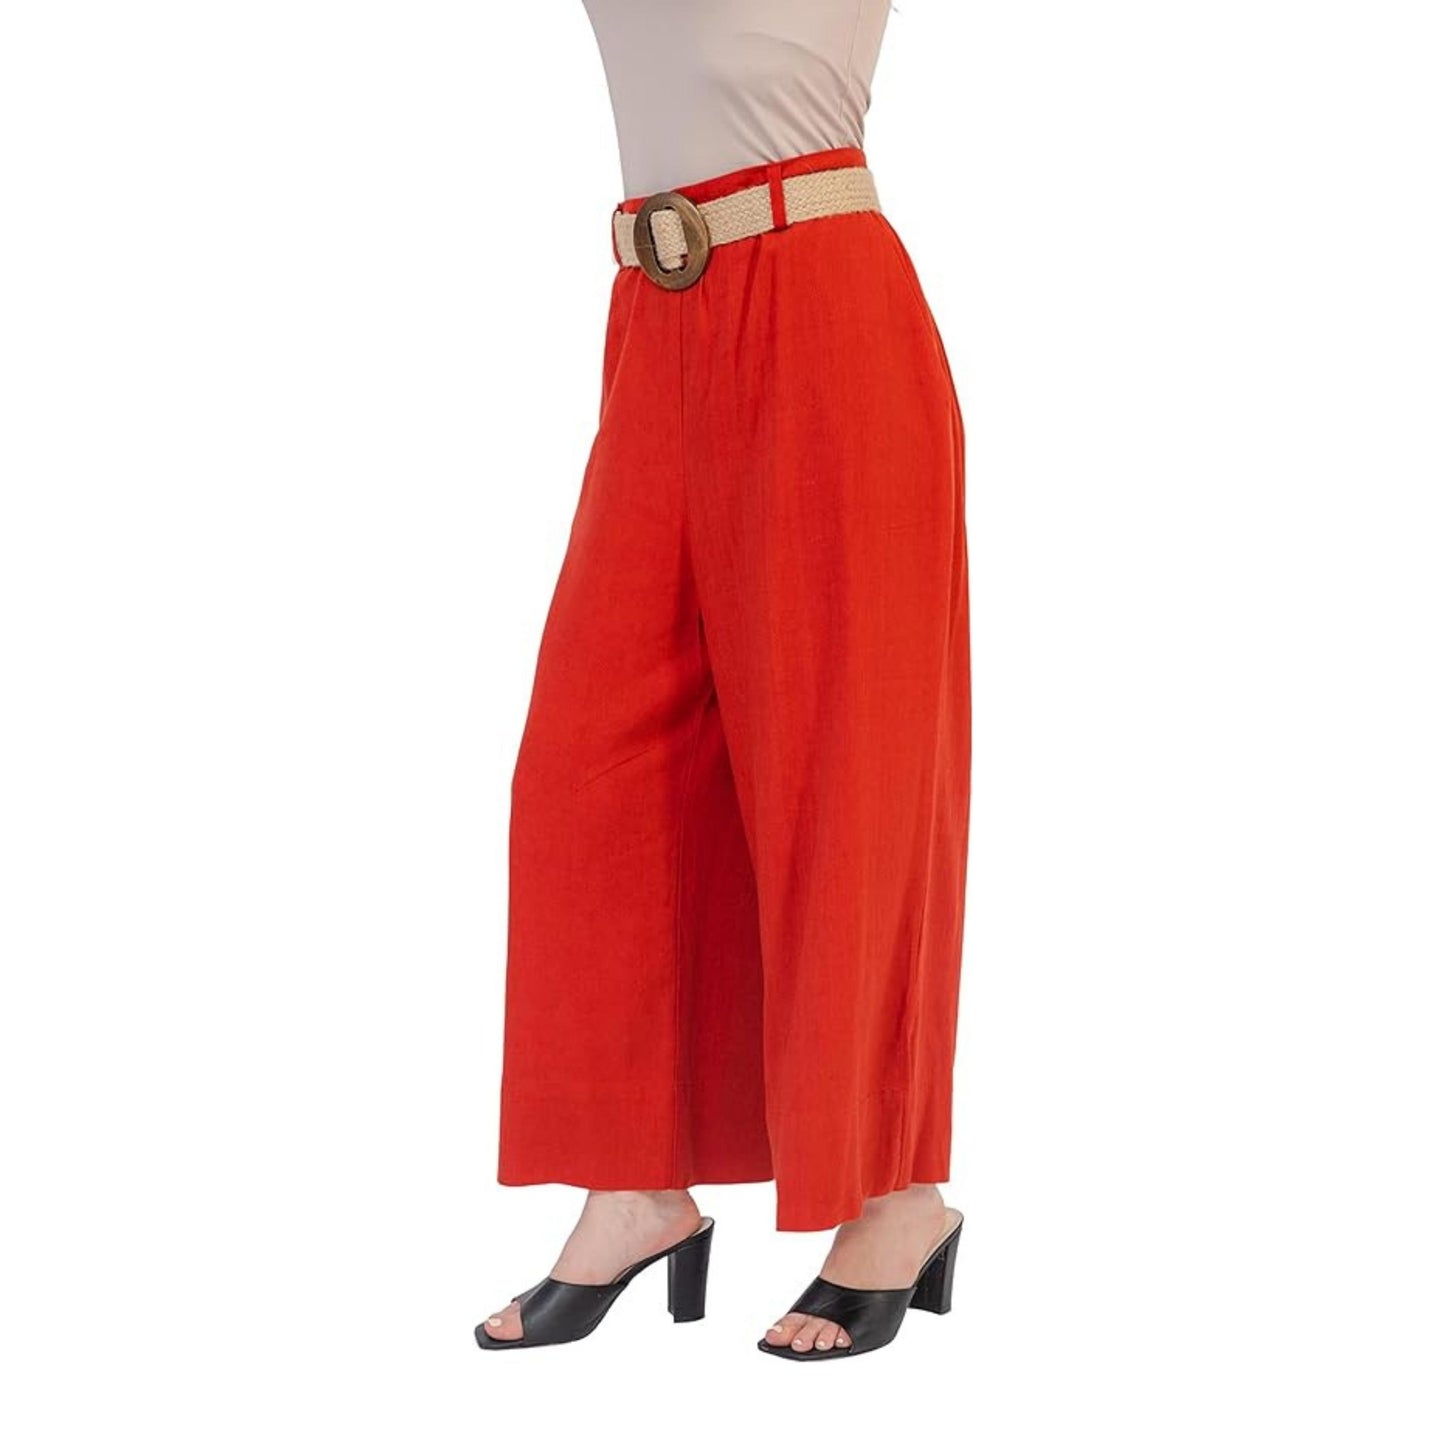 Flowy Pants for Women,Capri Pants for Women Dressy Casual Wide Leg